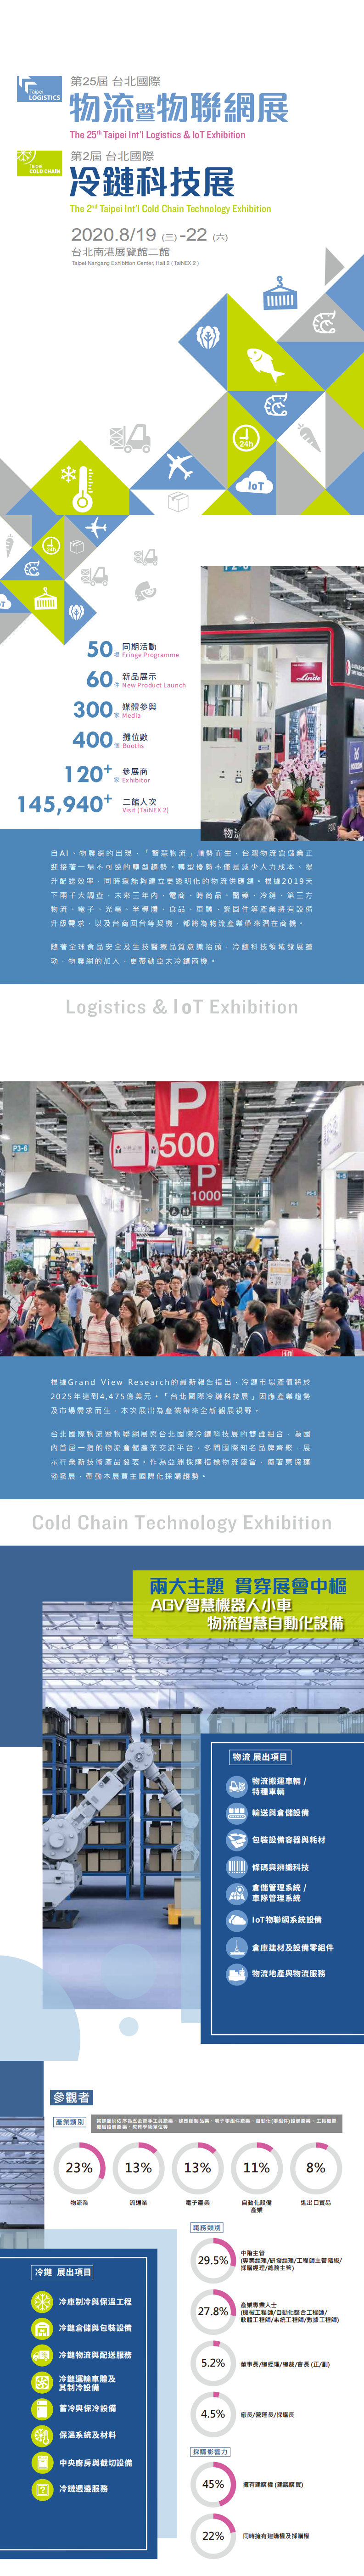 中国台湾运输物流及物联网展览会